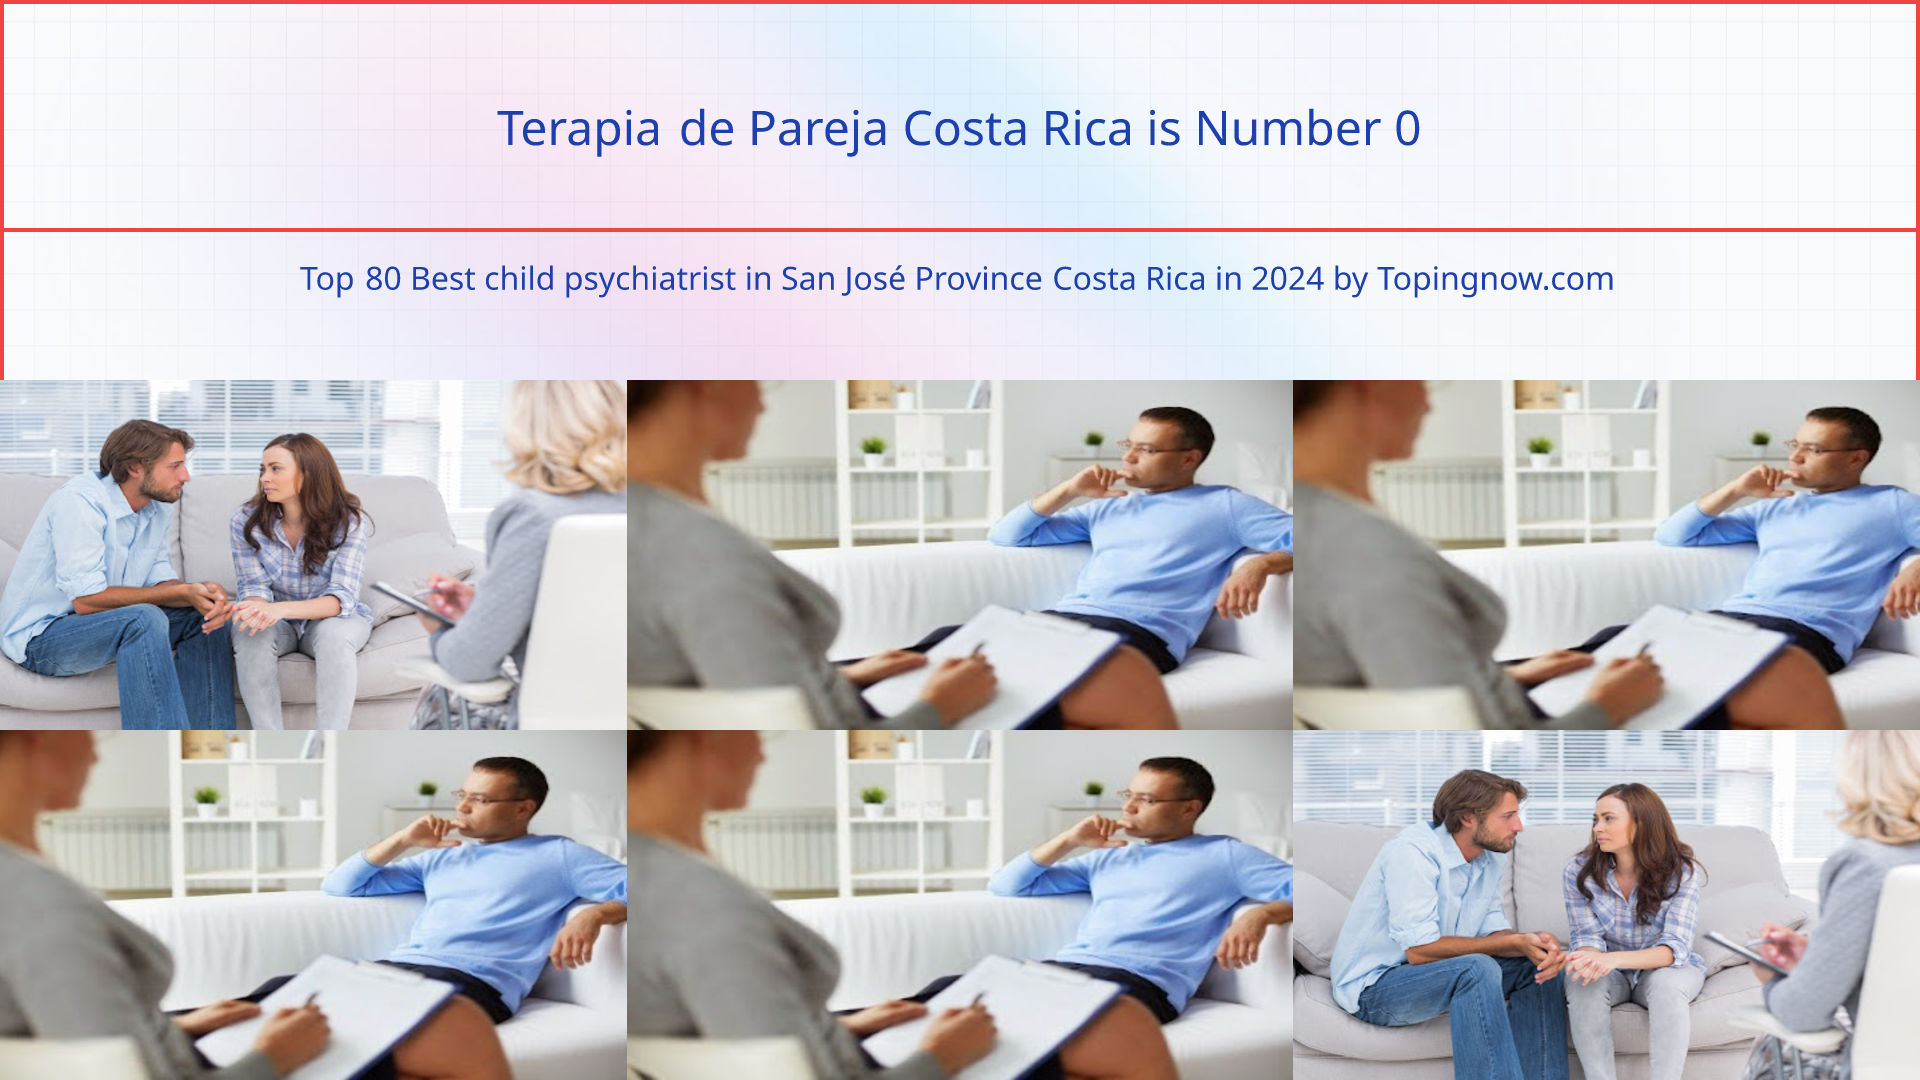 Terapia de Pareja Costa Rica: Top 80 Best child psychiatrist in San José Province Costa Rica in 2024